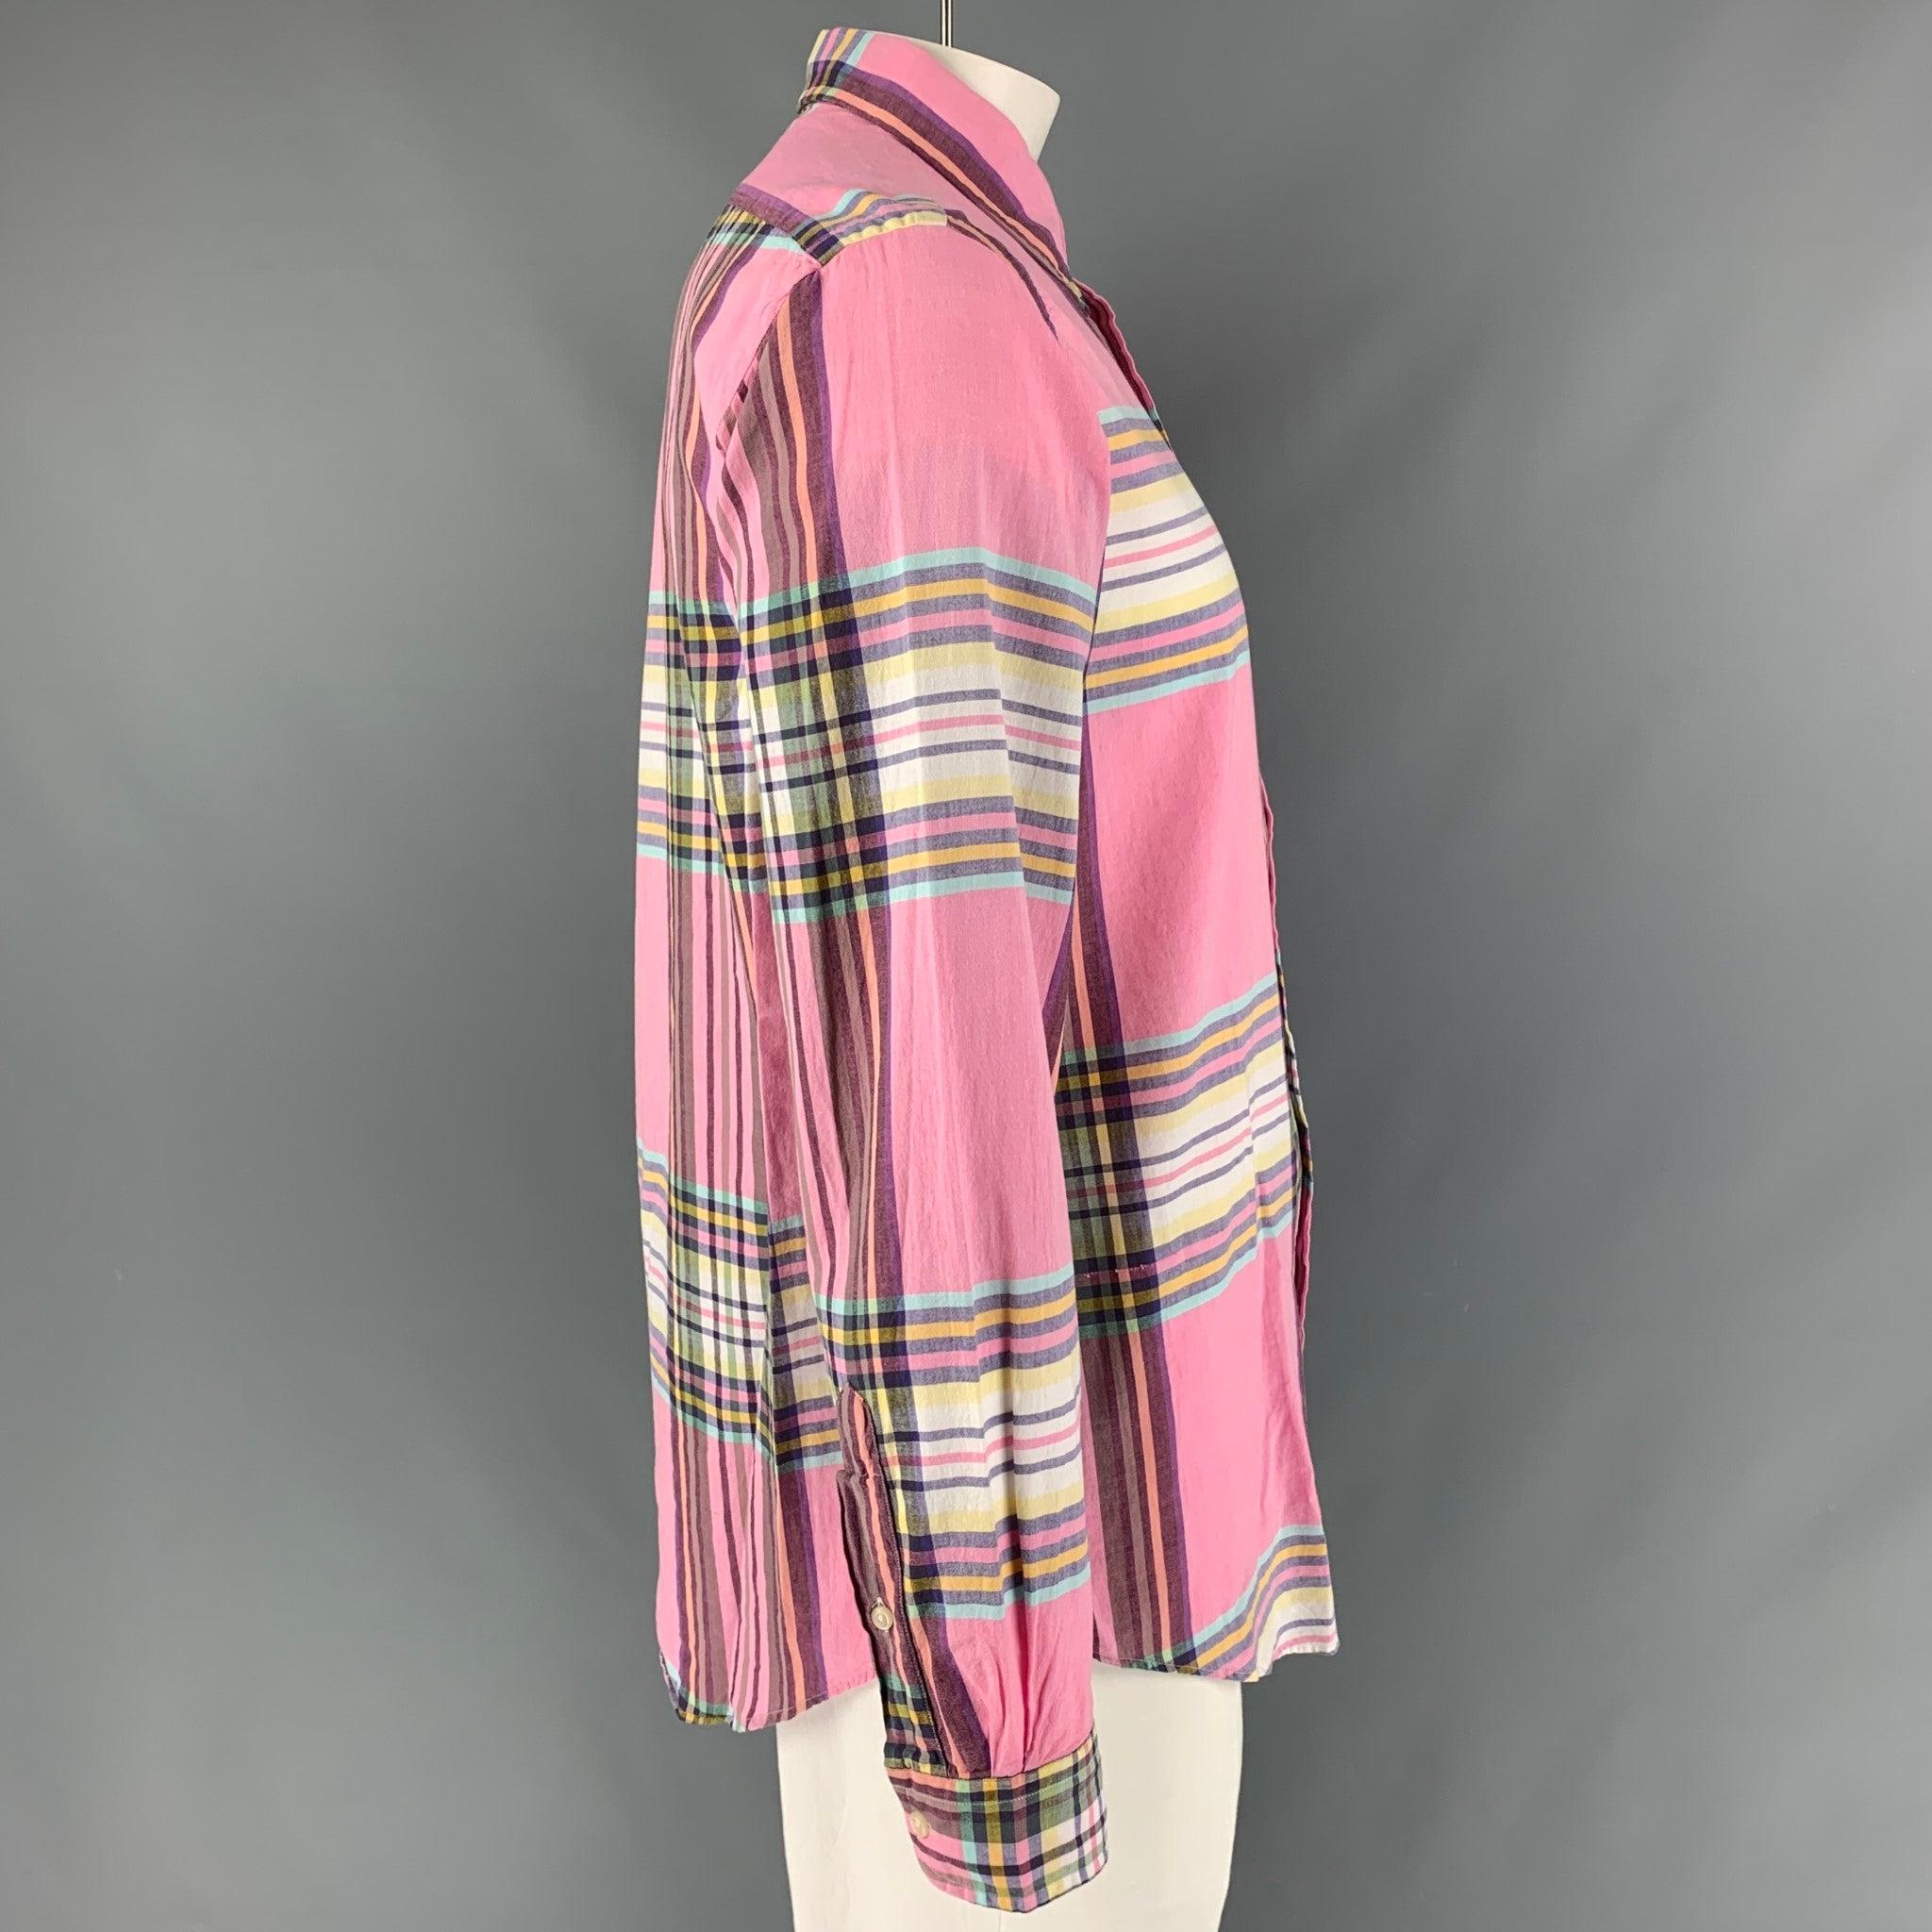 Das langärmelige Hemd von RALPH LAUREN ist aus pinkfarbenem, mehrfarbigem Baumwollmaterial gefertigt und verfügt über einen geknöpften Kragen. Sehr guter gebrauchter Zustand. 

Markiert:   L 

Abmessungen: 
 
Schultern: 18 Zoll  Brustkorb: 50 Zoll 